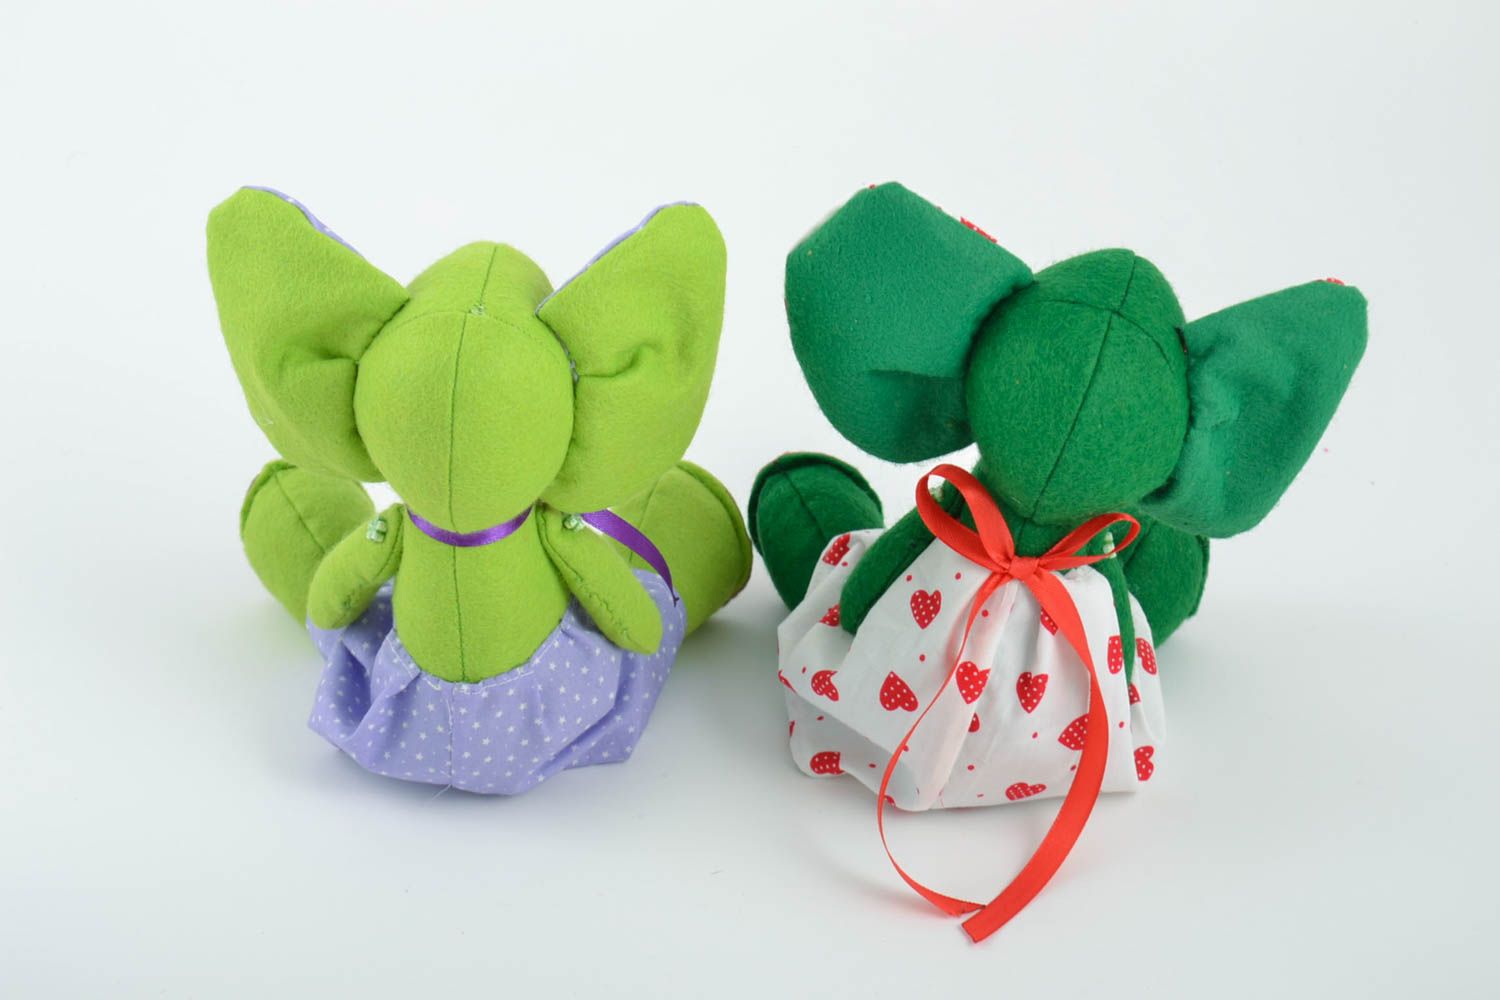 Мягкие игрушки ручной работы слоники из фетра набор 2 штуки зеленый и салатовый фото 2